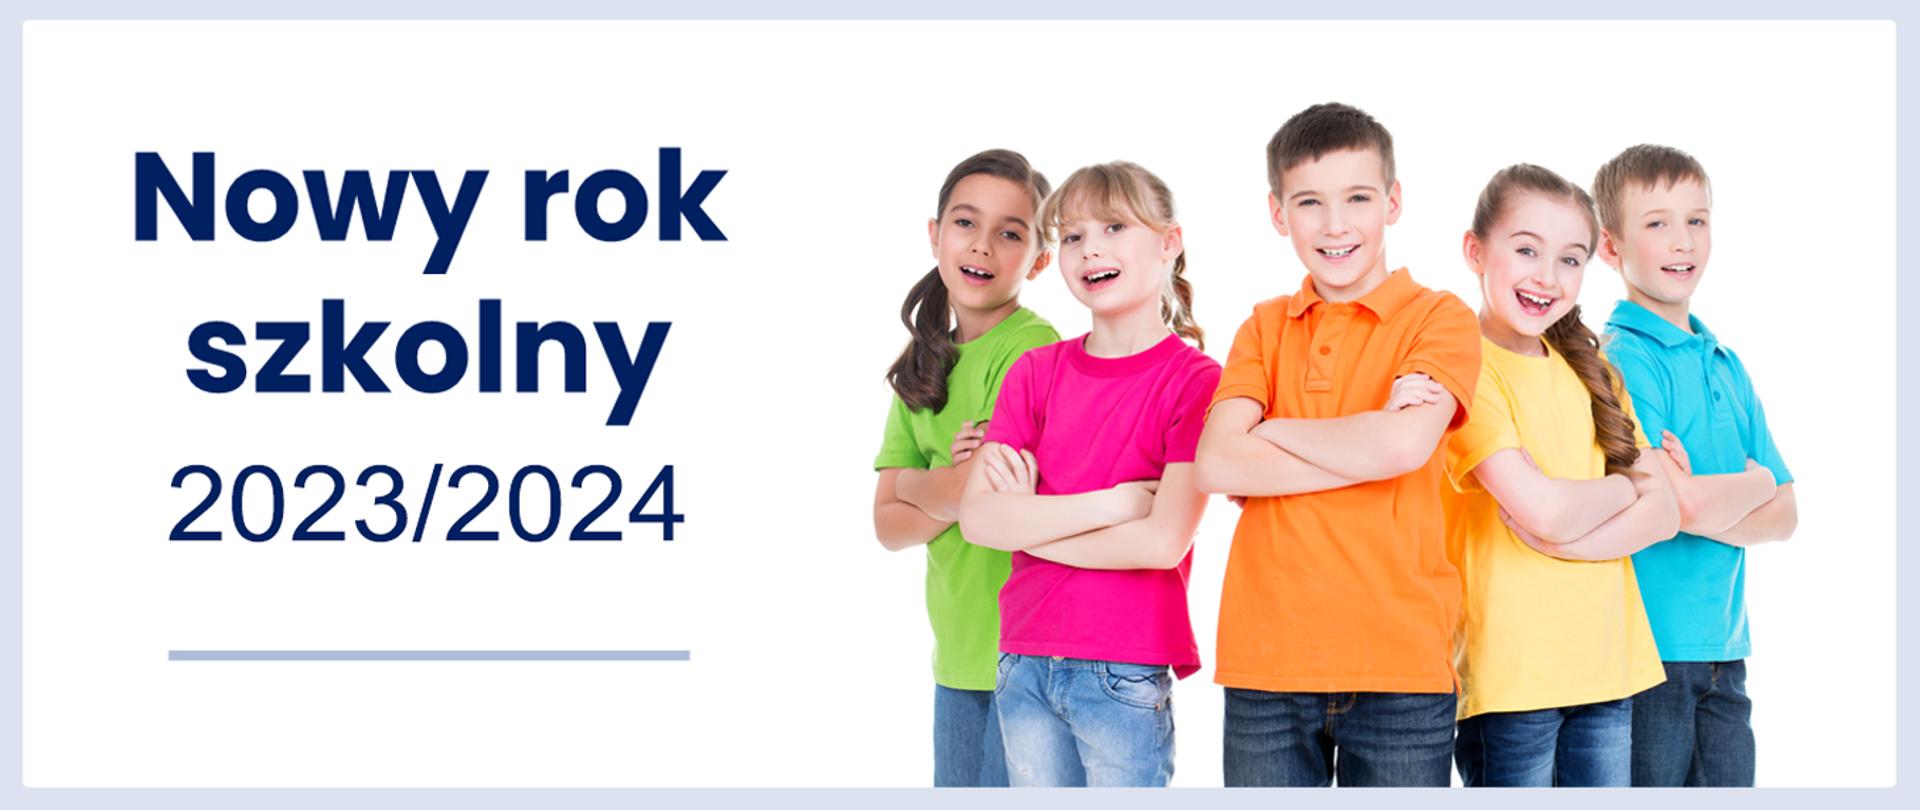 Uśmiechnięte dzieci w kolorowych bluzkach obok napis - Nowy rok szkolny 2023/2024